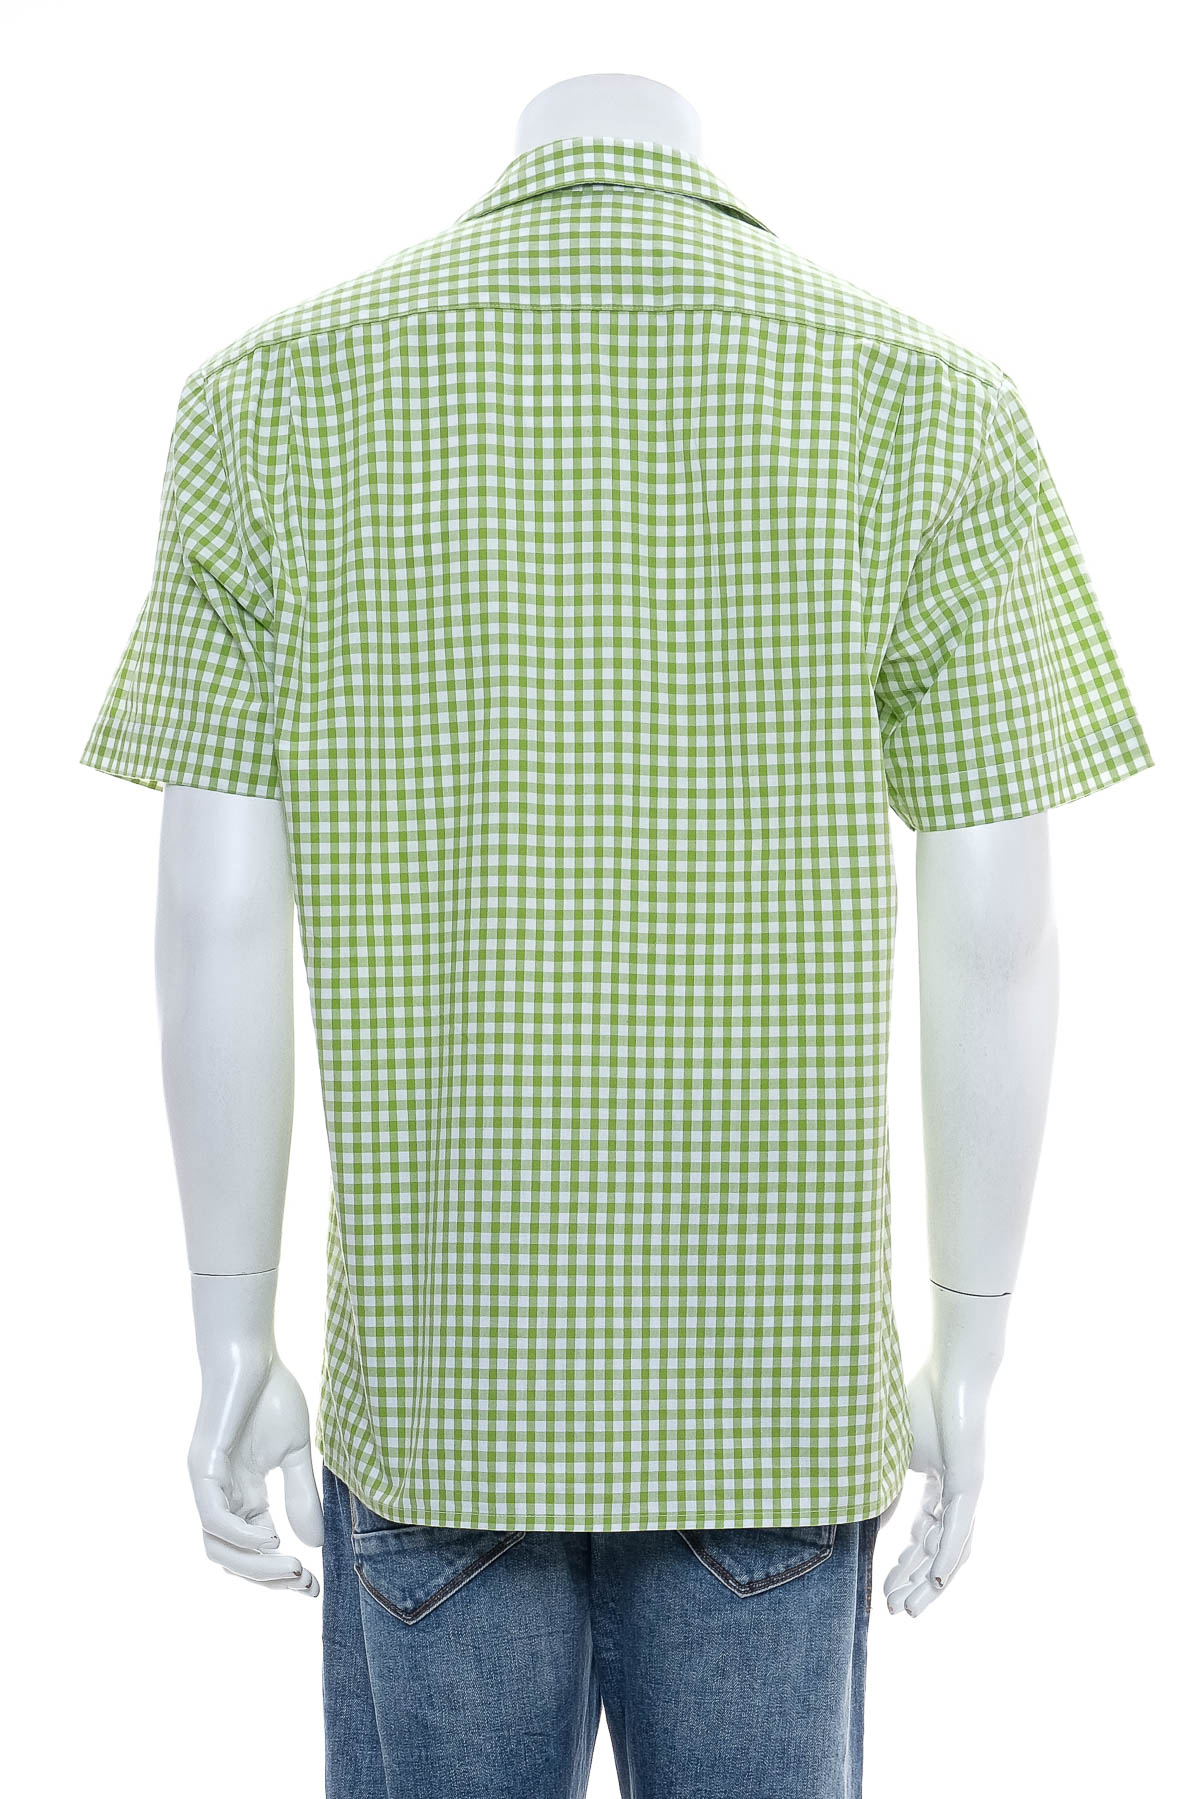 Ανδρικό πουκάμισο - Grachlen - 1